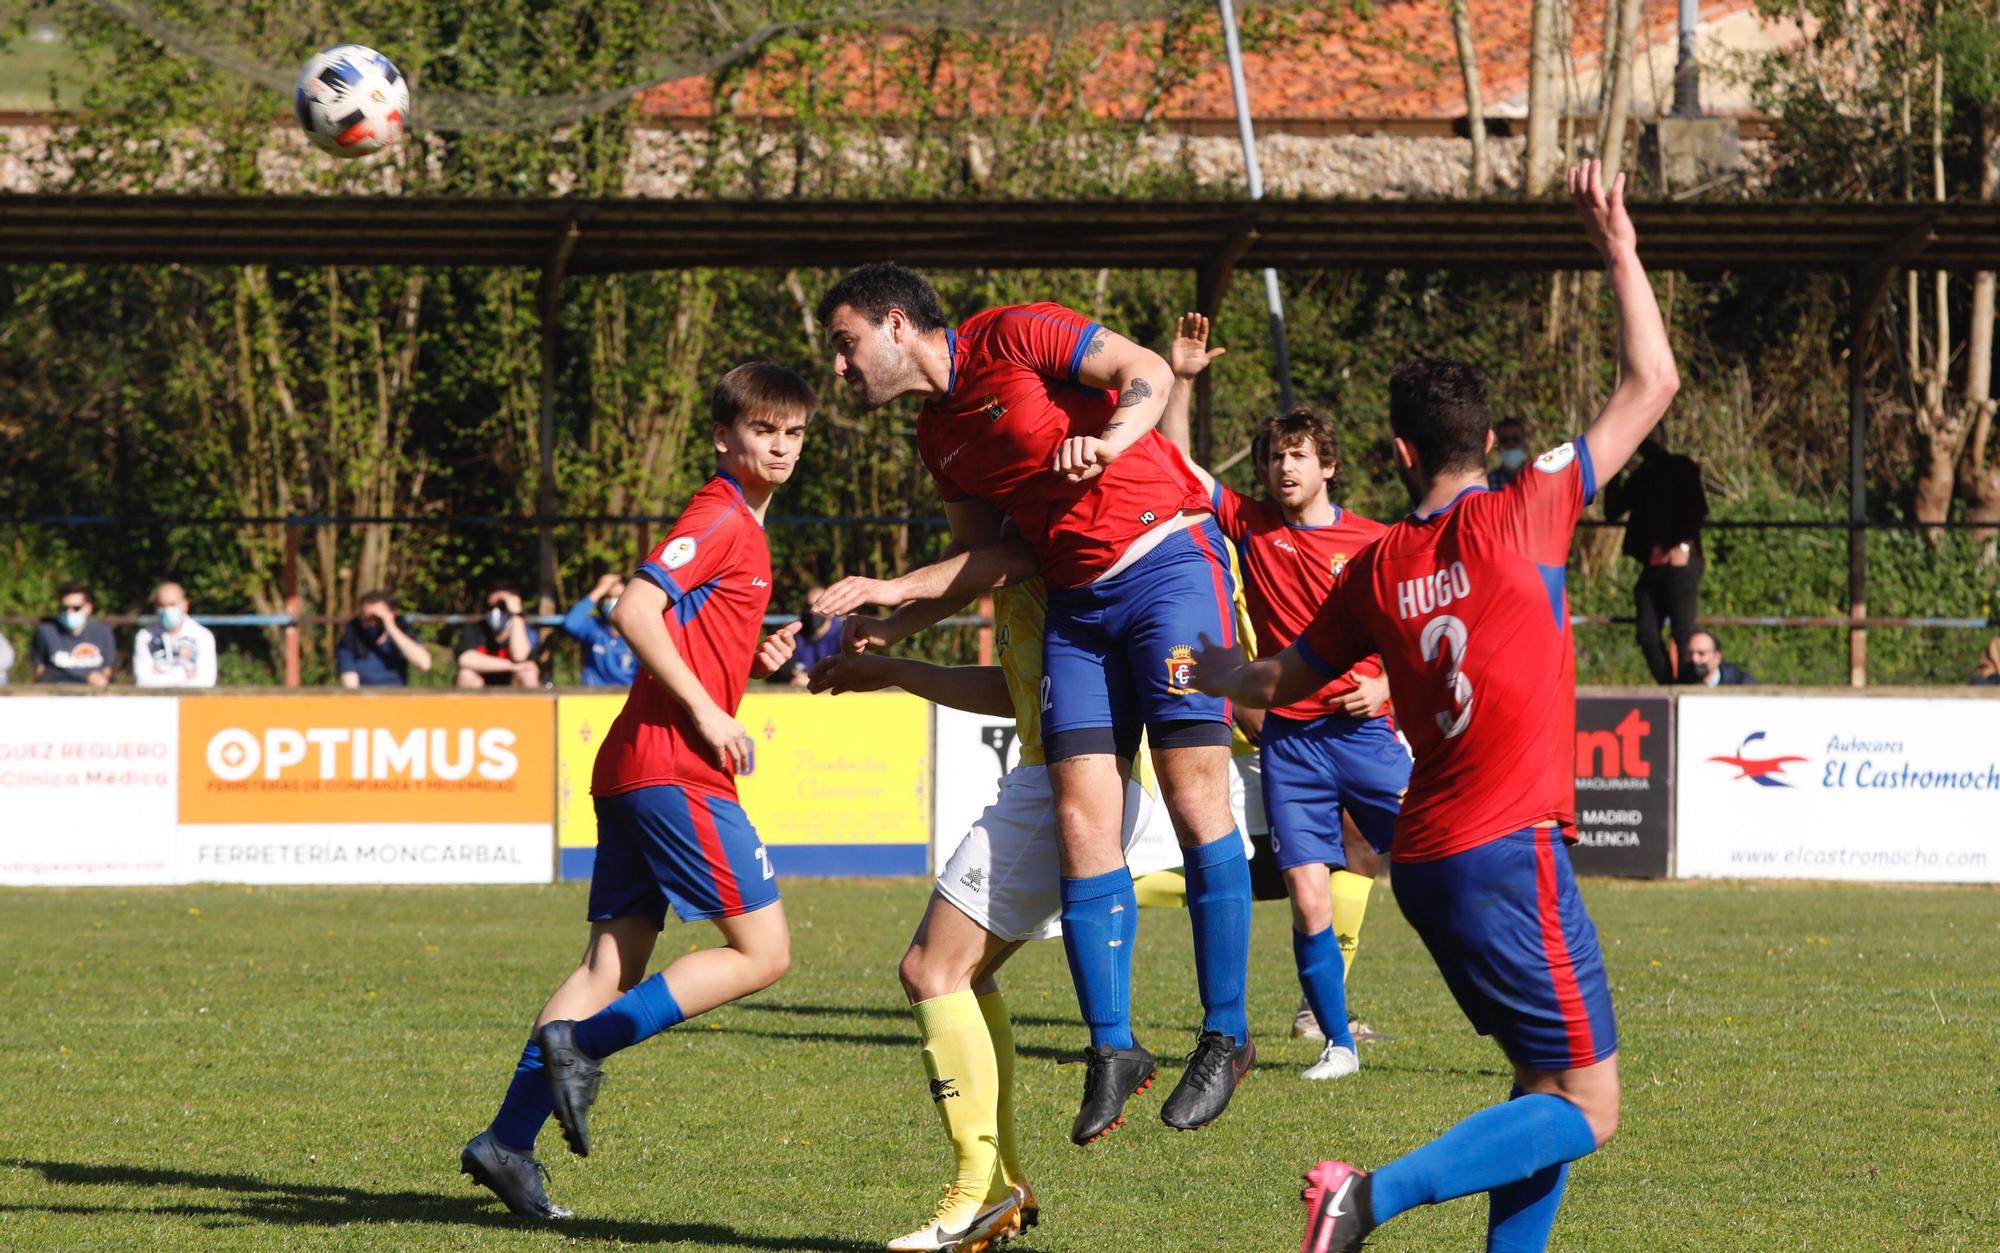 Las mejores imágenes de la jornada en la Tercera División de Asturias